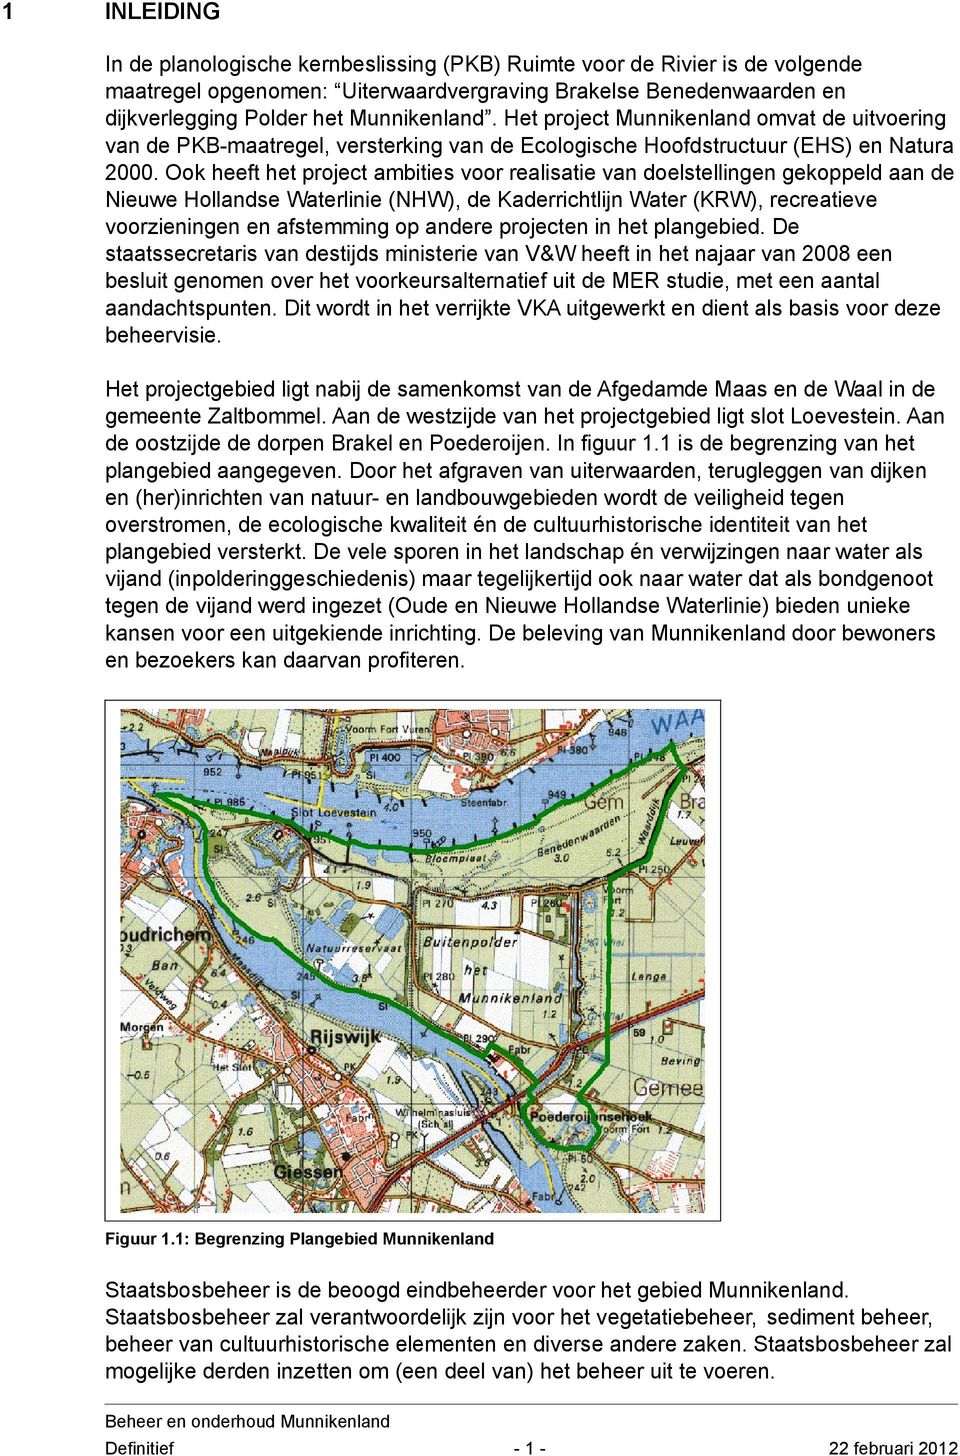 Ook heeft het project ambities voor realisatie van doelstellingen gekoppeld aan de Nieuwe Hollandse Waterlinie (NHW), de Kaderrichtlijn Water (KRW), recreatieve voorzieningen en afstemming op andere